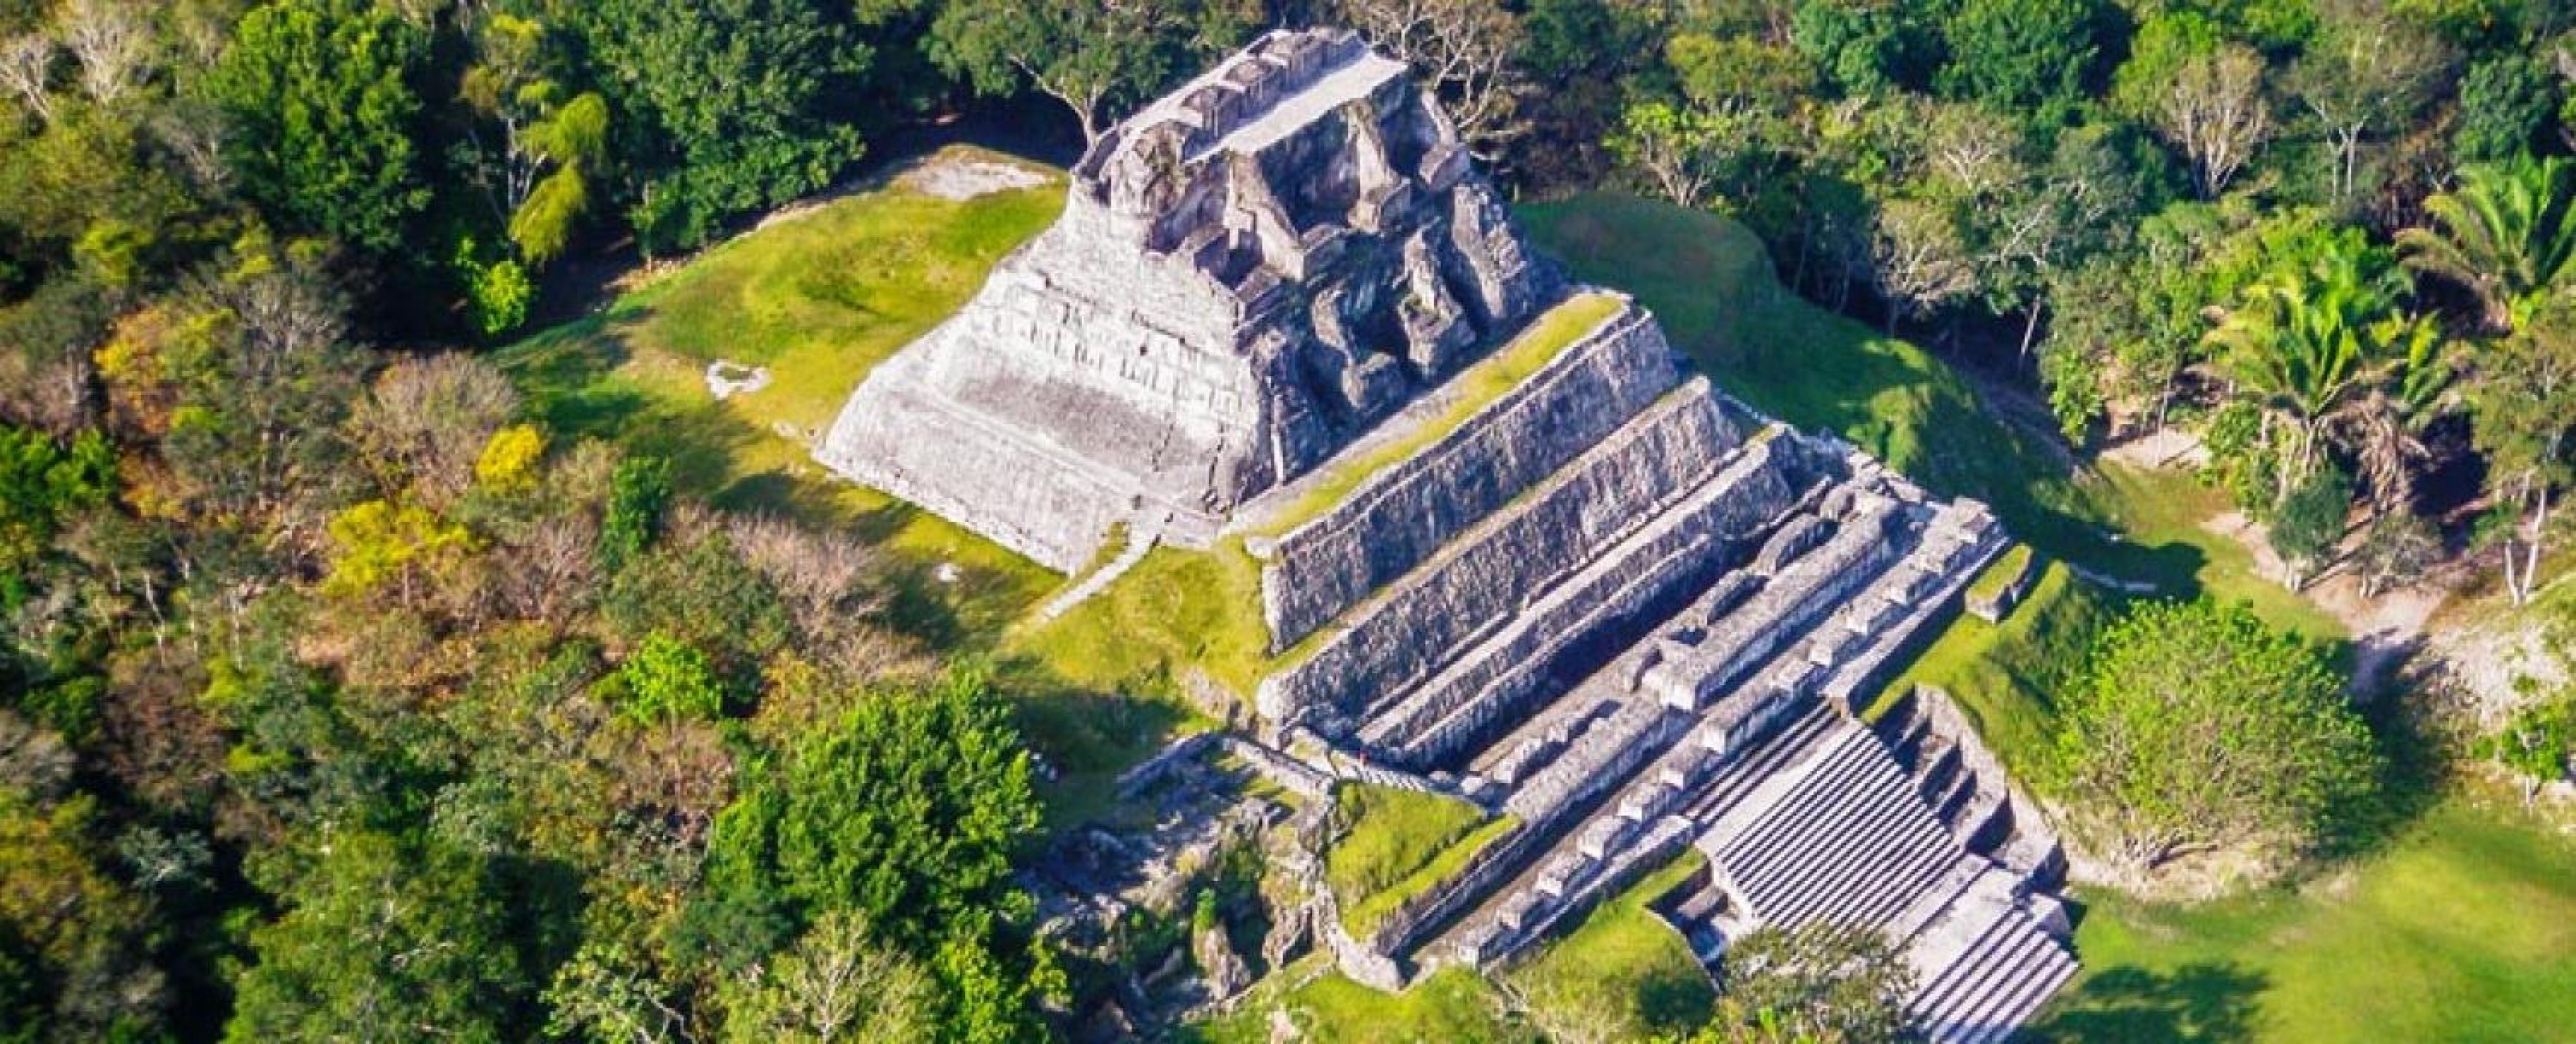 mayan ruins tour belize city